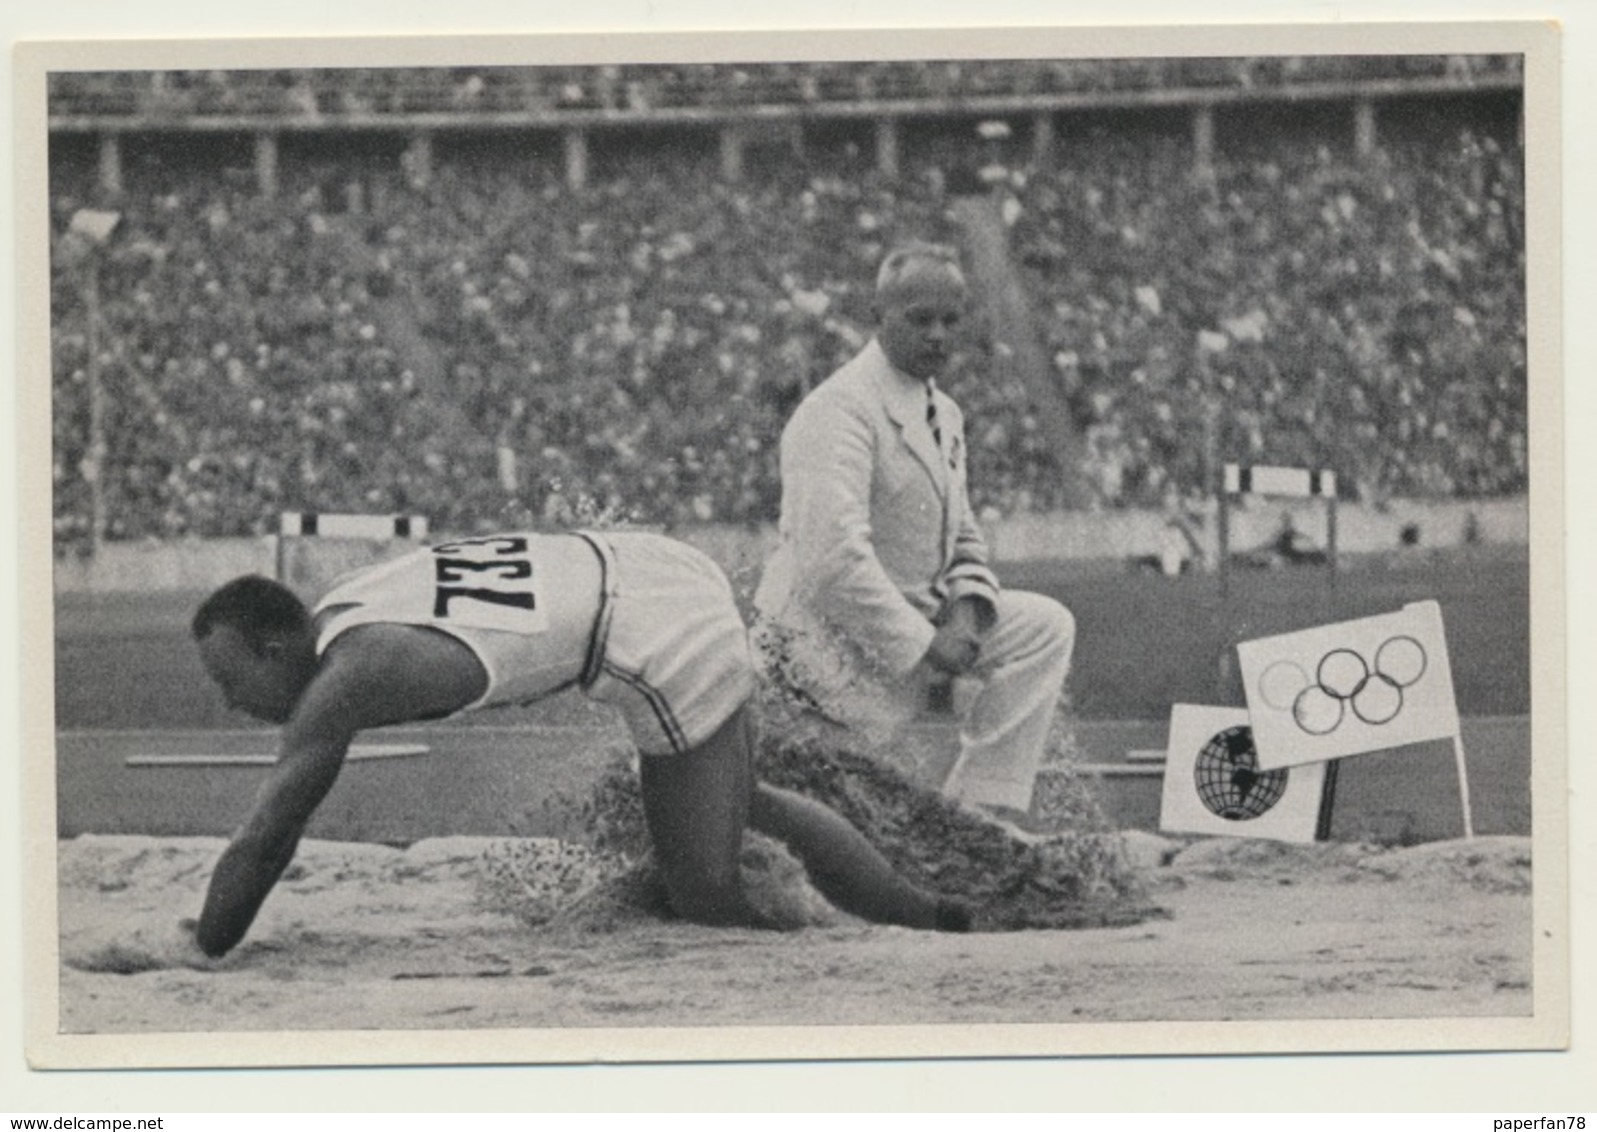 Sammelbild Vignette Olympia 1936 Leichtathletik Weitsprung Owens - Leichtathletik